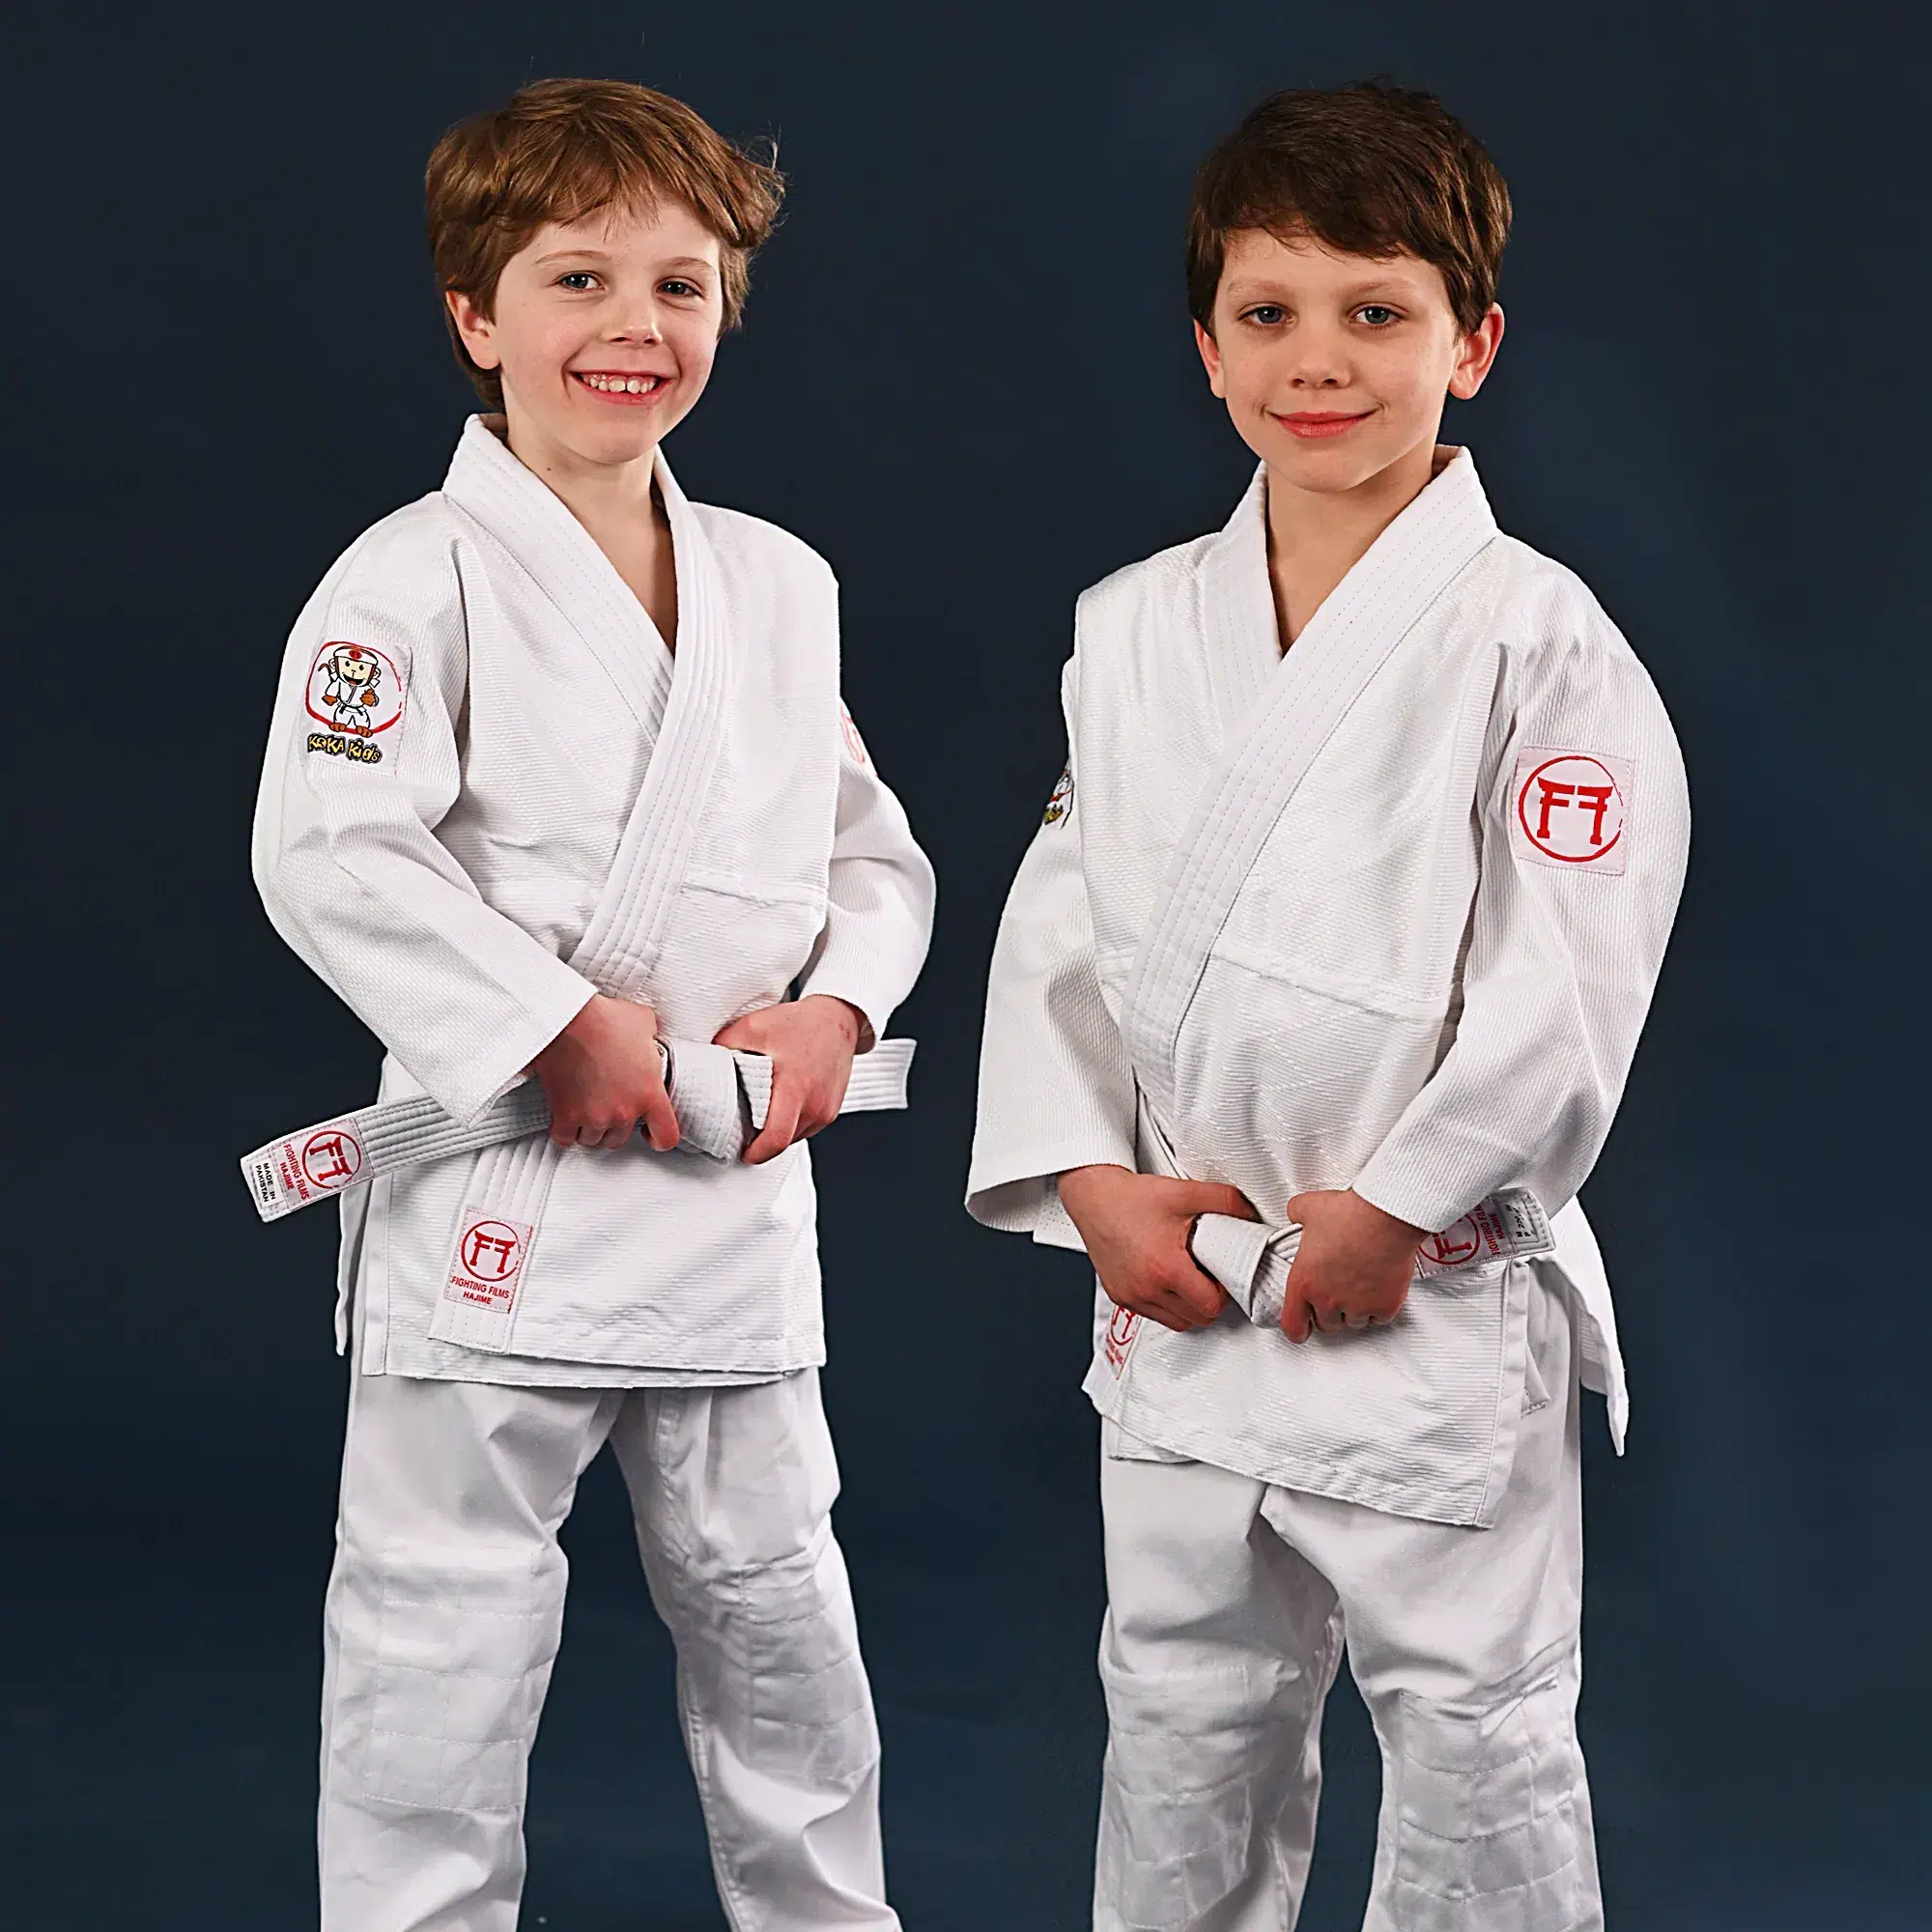 Kimono de Judo (judogi) pour enfant : comment le choisir ?